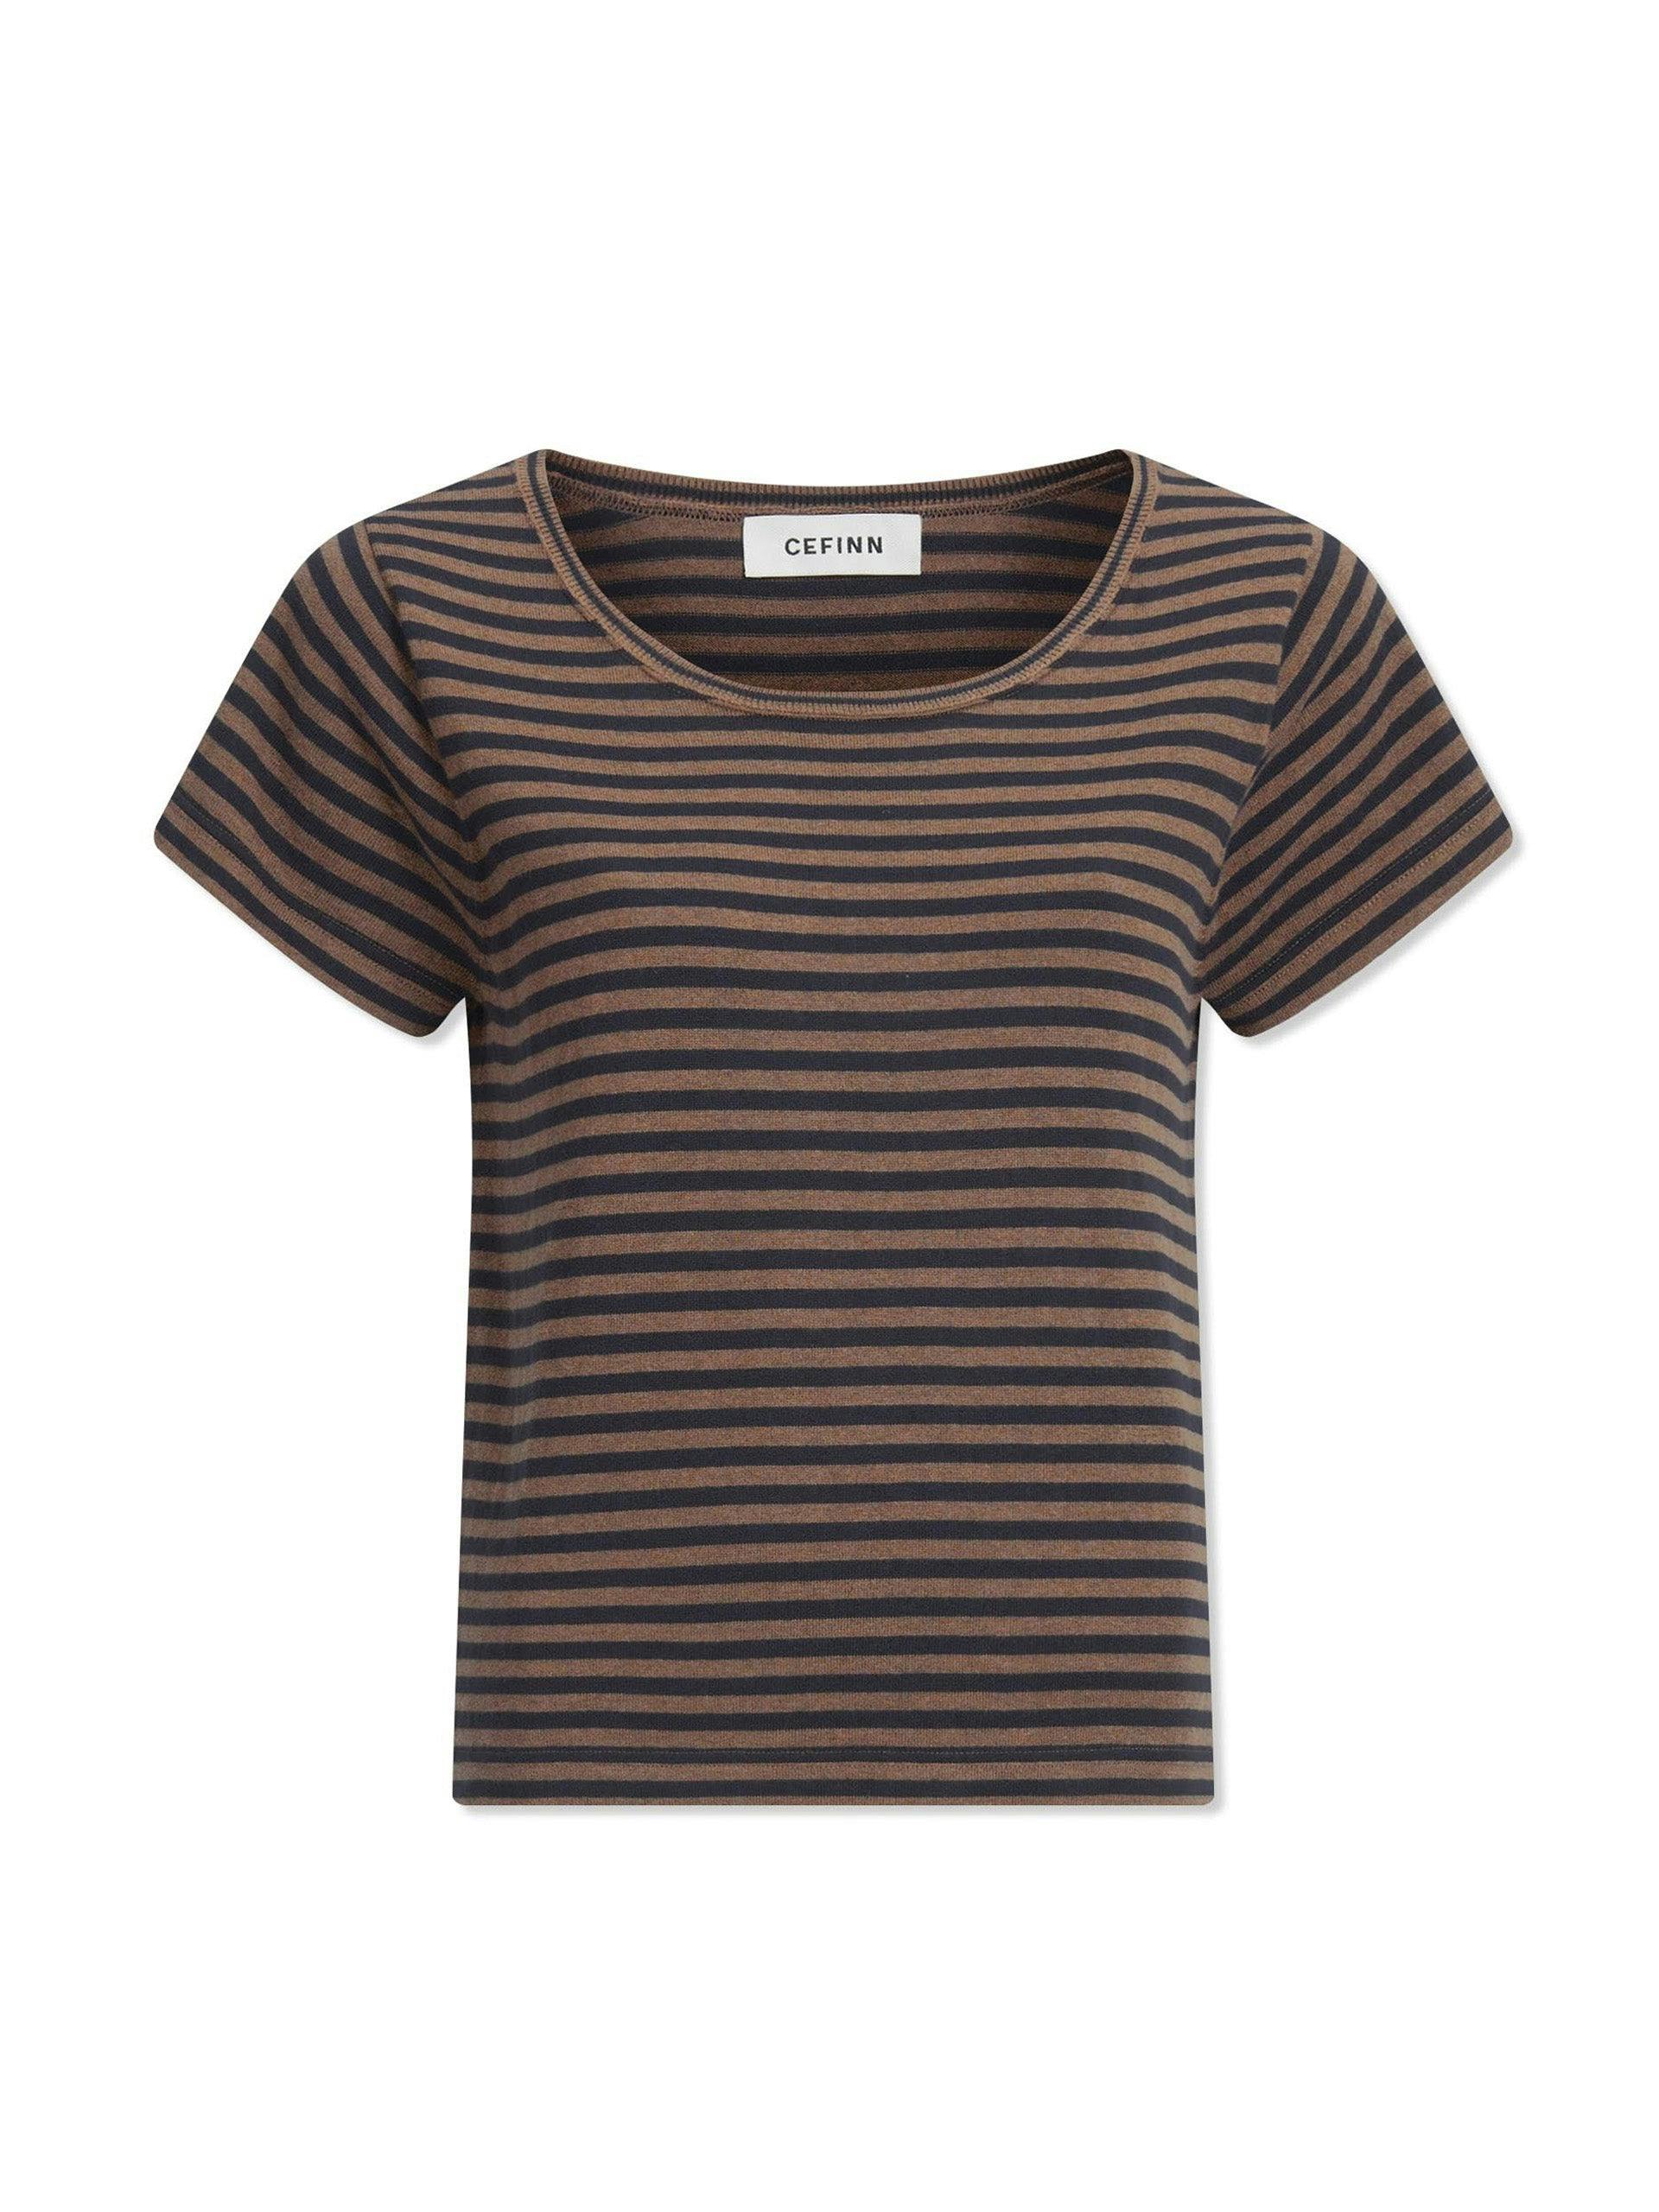 Brown navy stripe Madison t-shirt